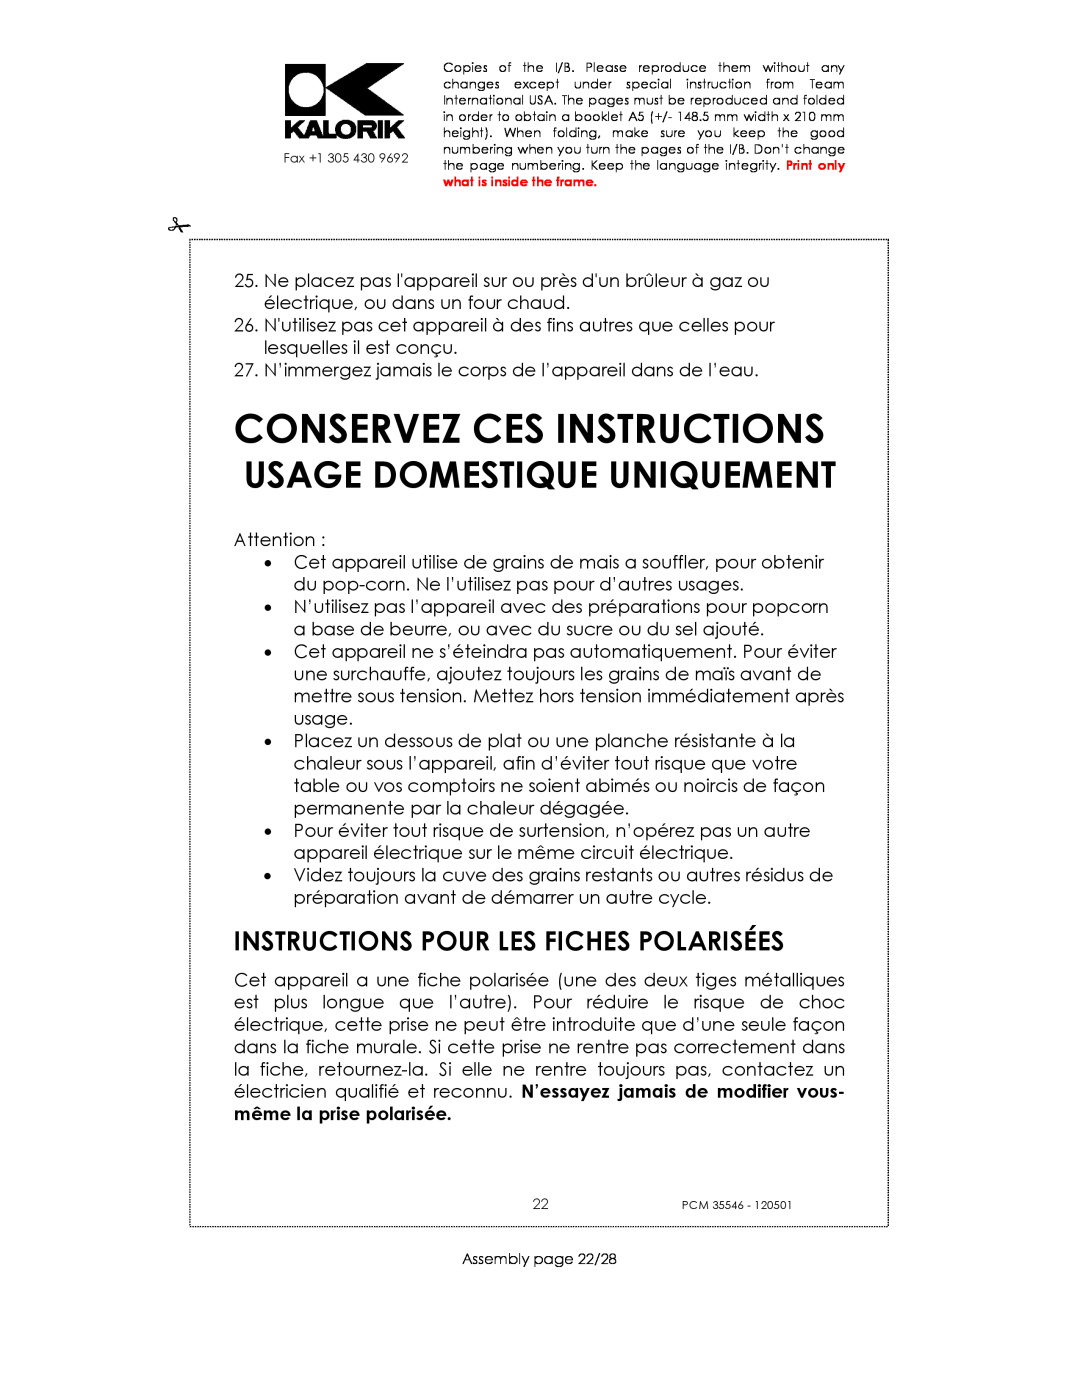 Kalorik PCM 35546 manual Conservez Ces Instructions, Instructions Pour Les Fiches Polarisées, Usage Domestique Uniquement 